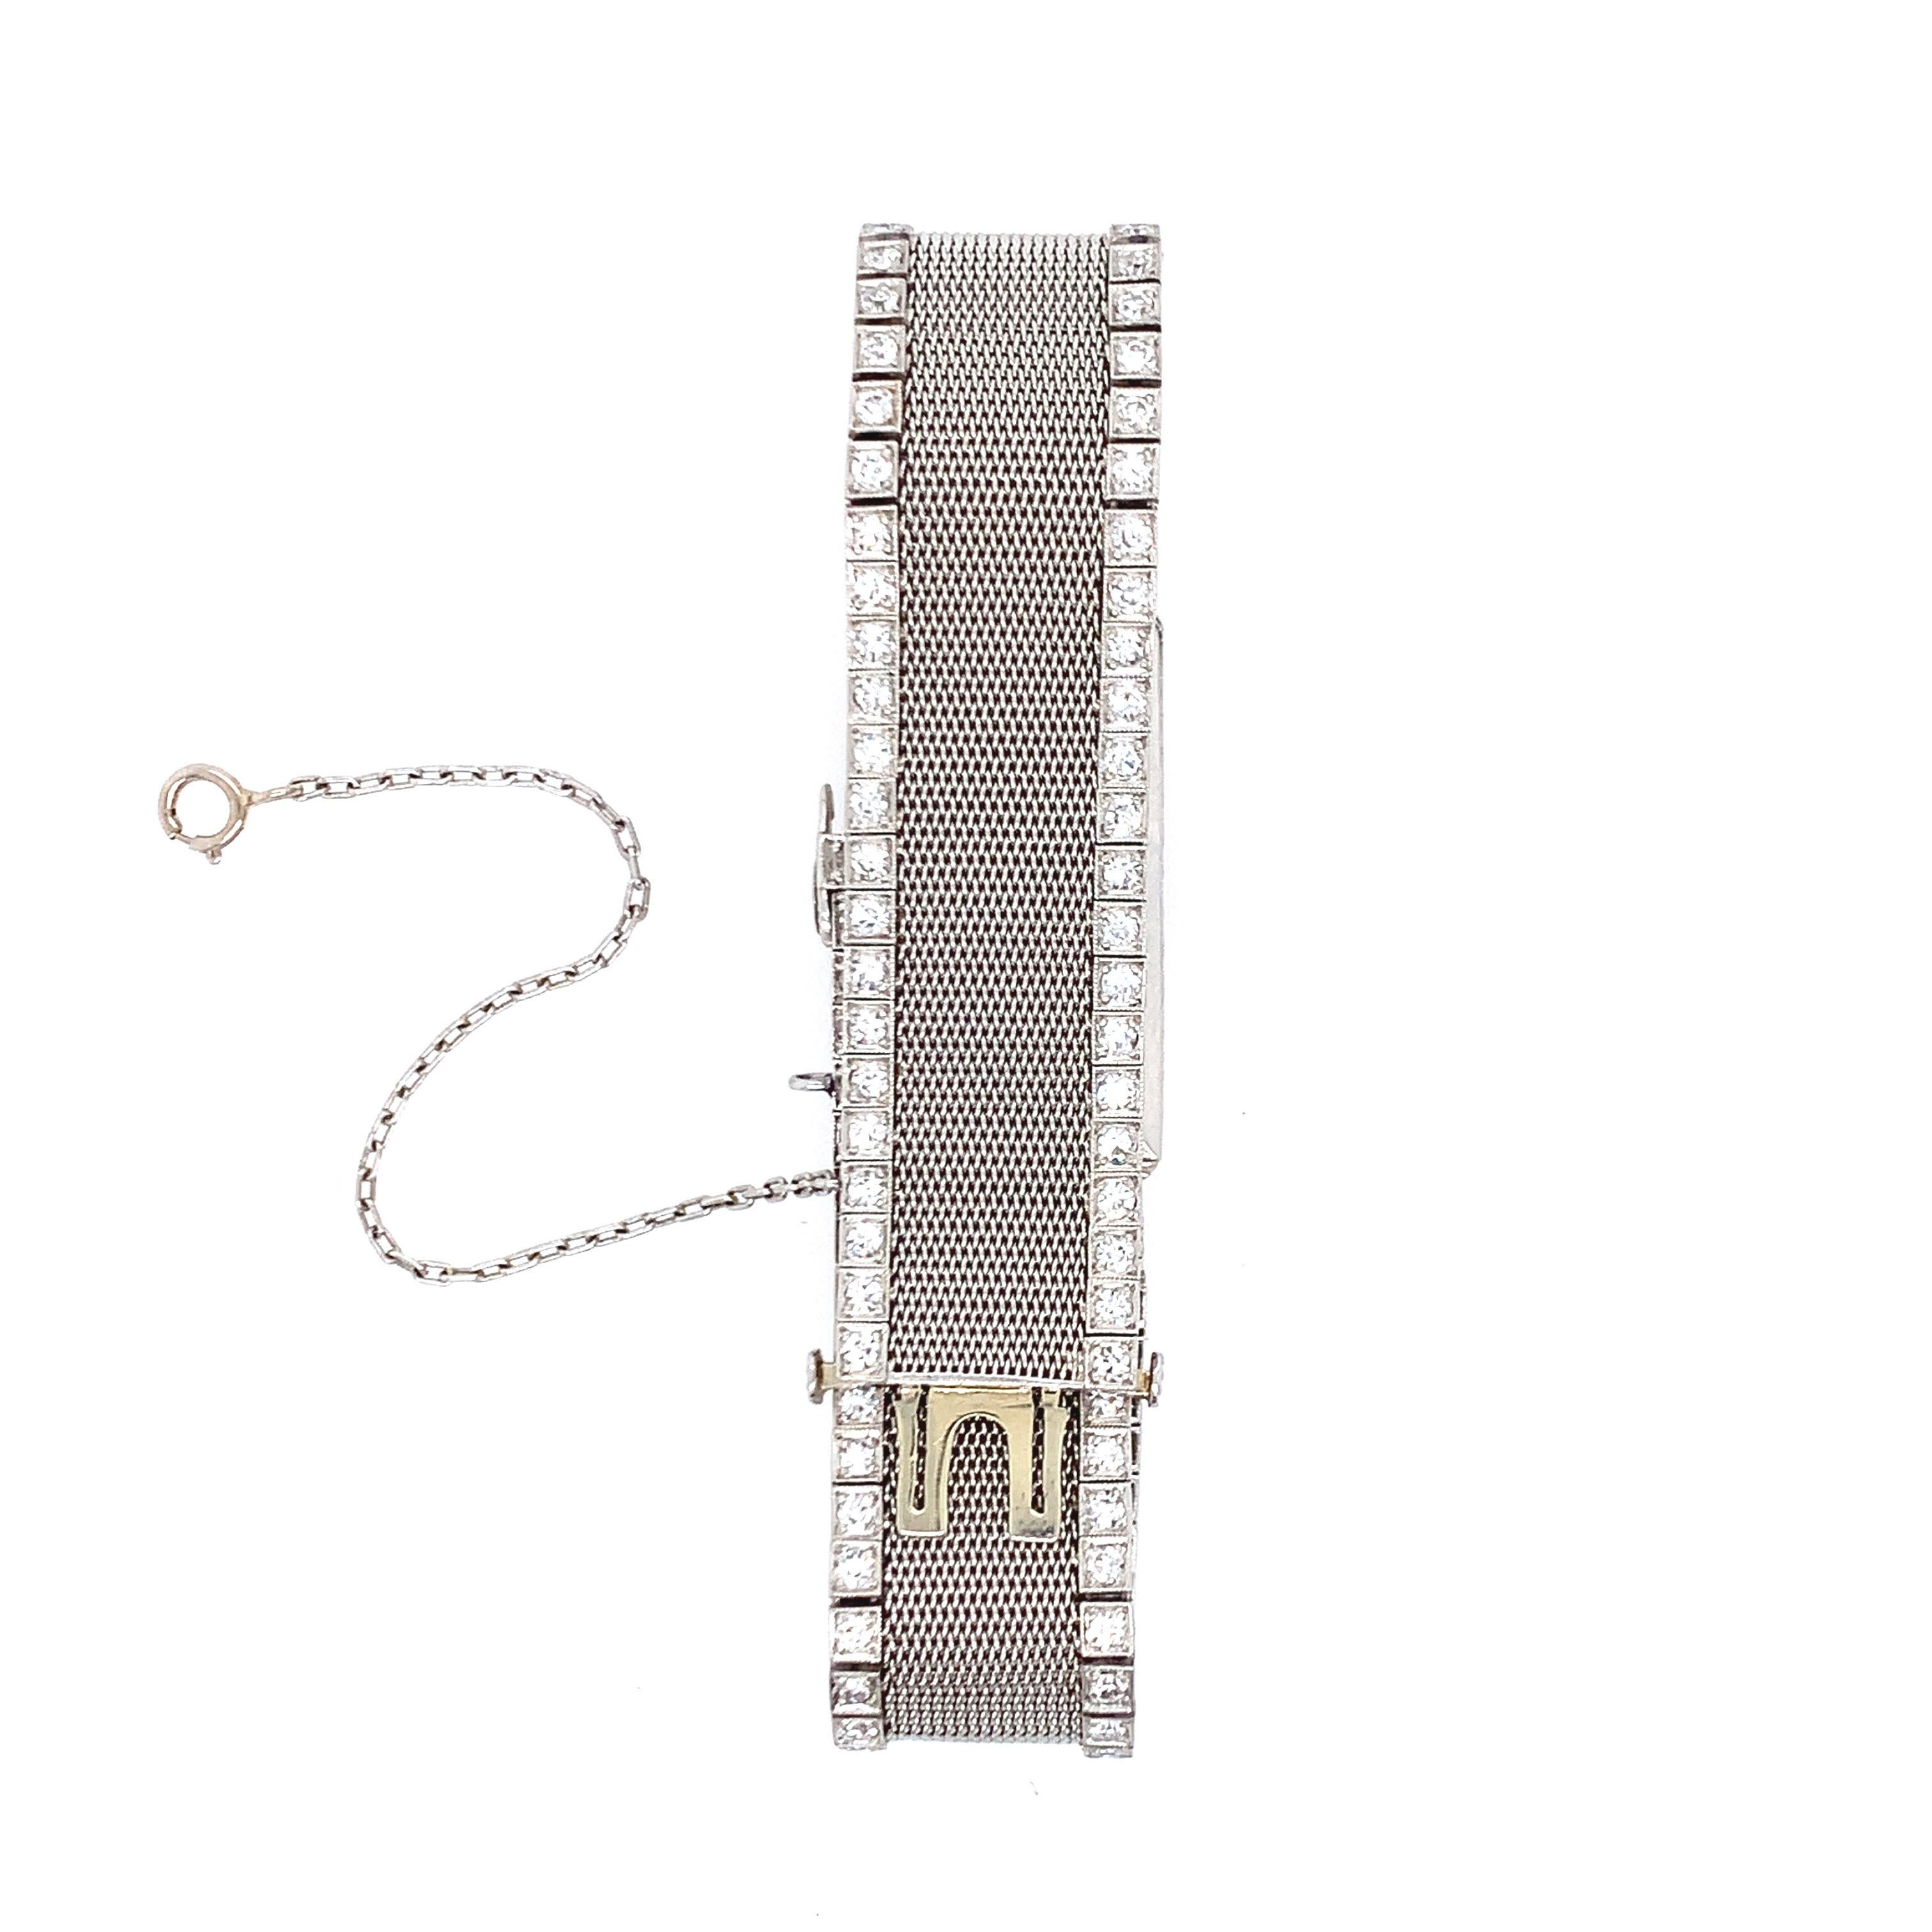 Diese von Tiffany & Co. entworfene Damenuhr ist im Art-déco-Stil gehalten und stammt aus den 1920er Jahren. Das Netzband ist mit Diamanten besetzt. Das Uhrwerk ist von C.H. Meylan und hat 18 Juwelen. Das Gesamtgewicht beträgt 44.4 Gramm. Wird mit